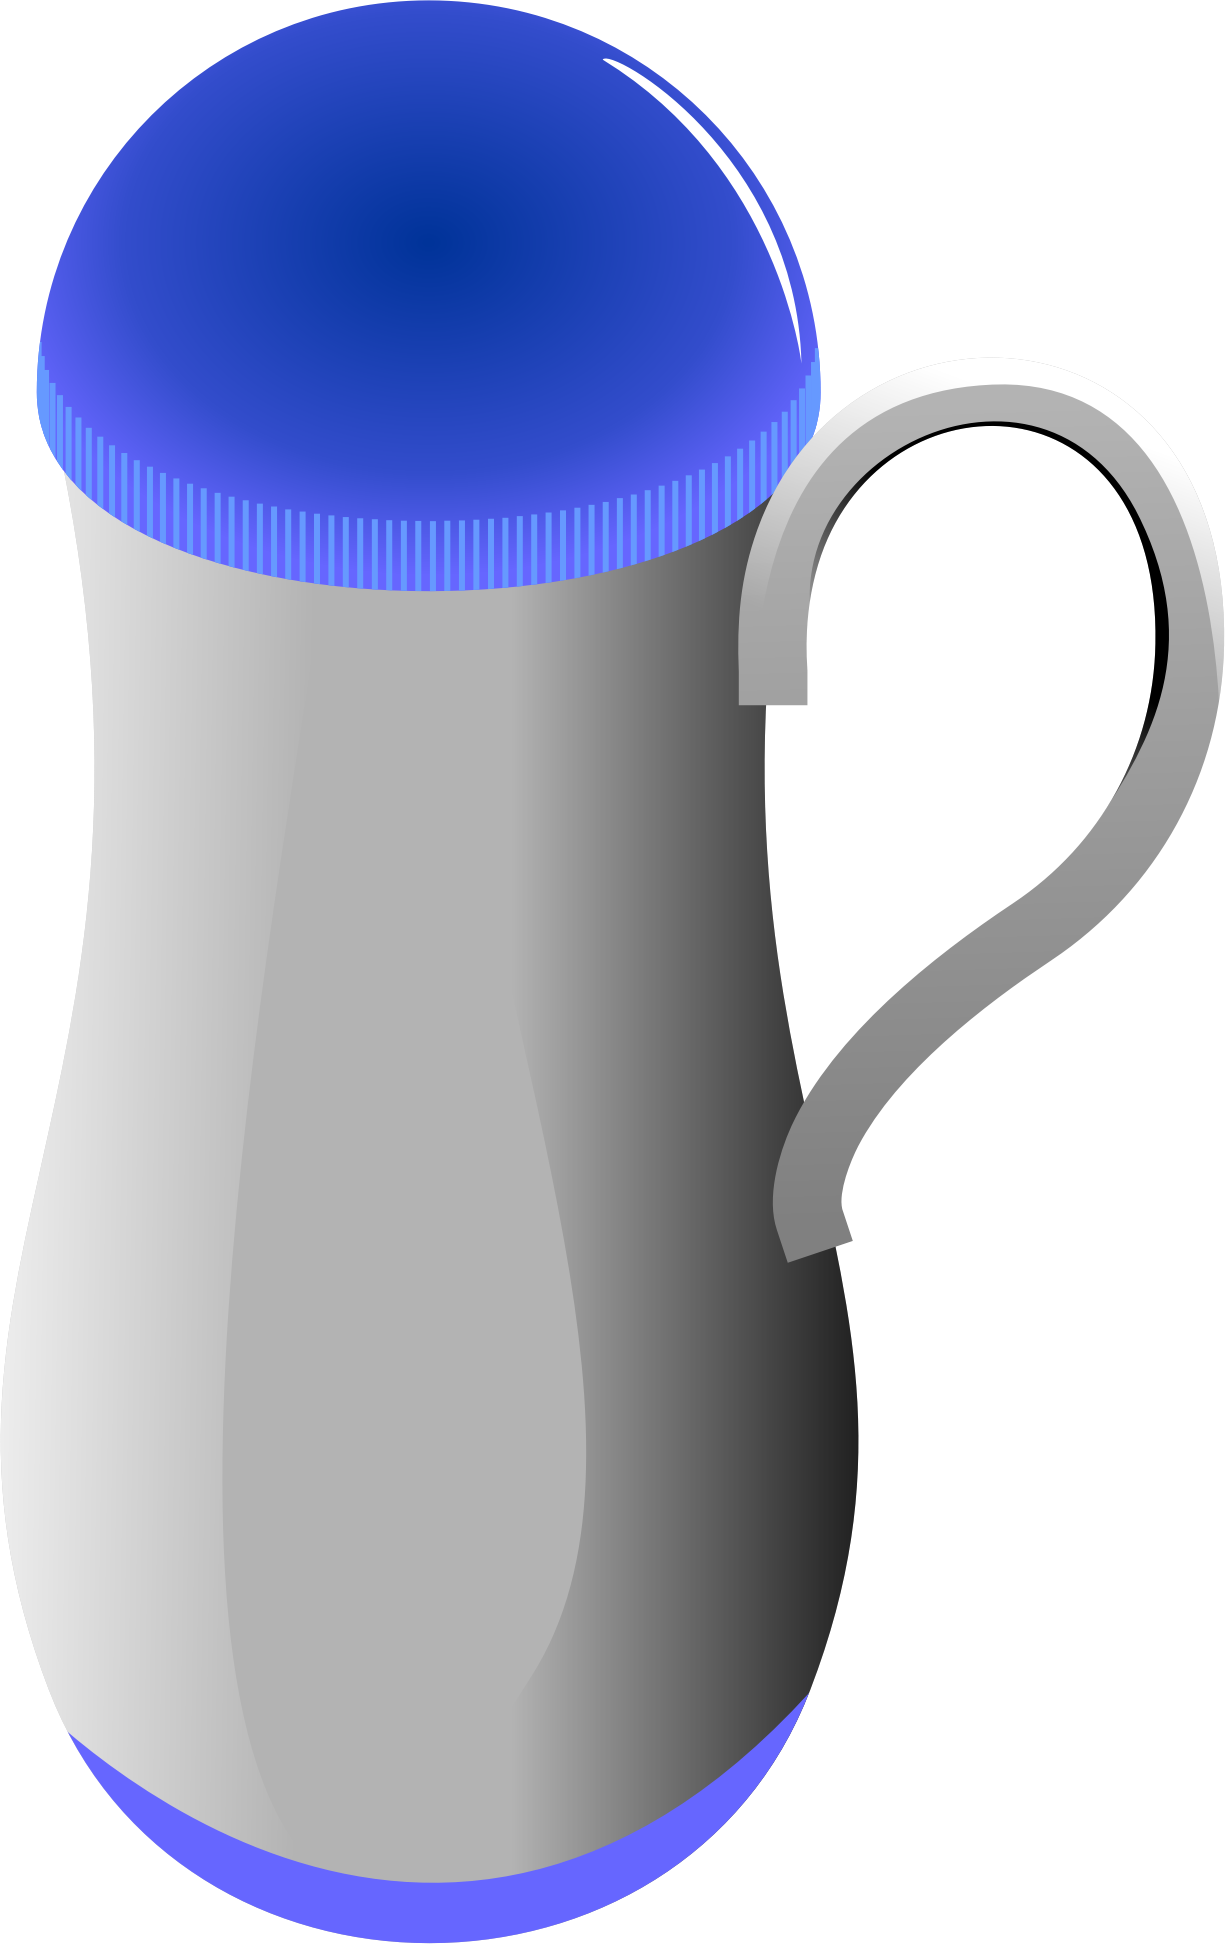 Mug clipart jug, Mug jug Transparent FREE for download on ...